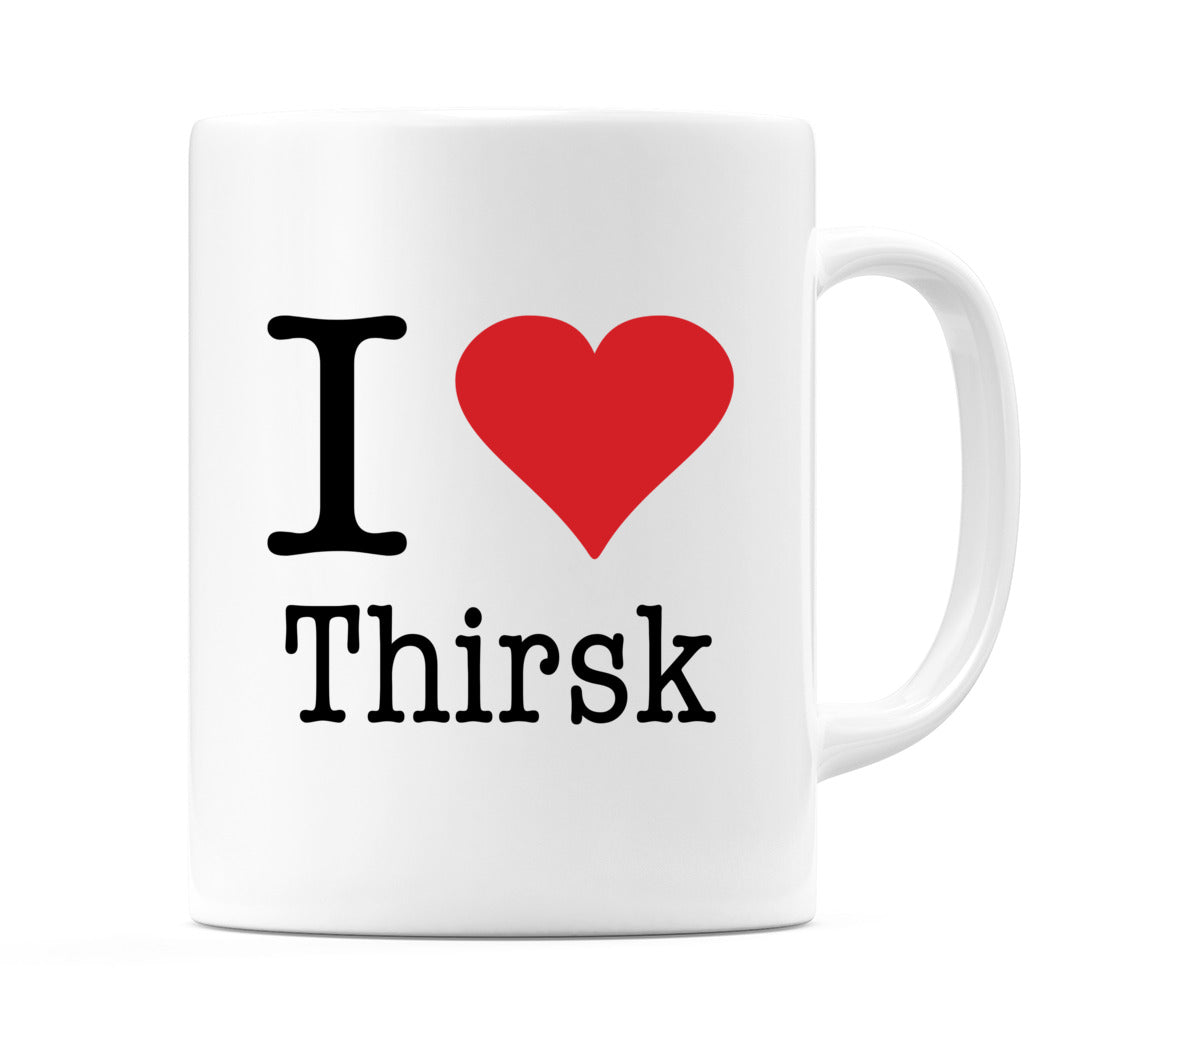 I Love Thirsk Mug